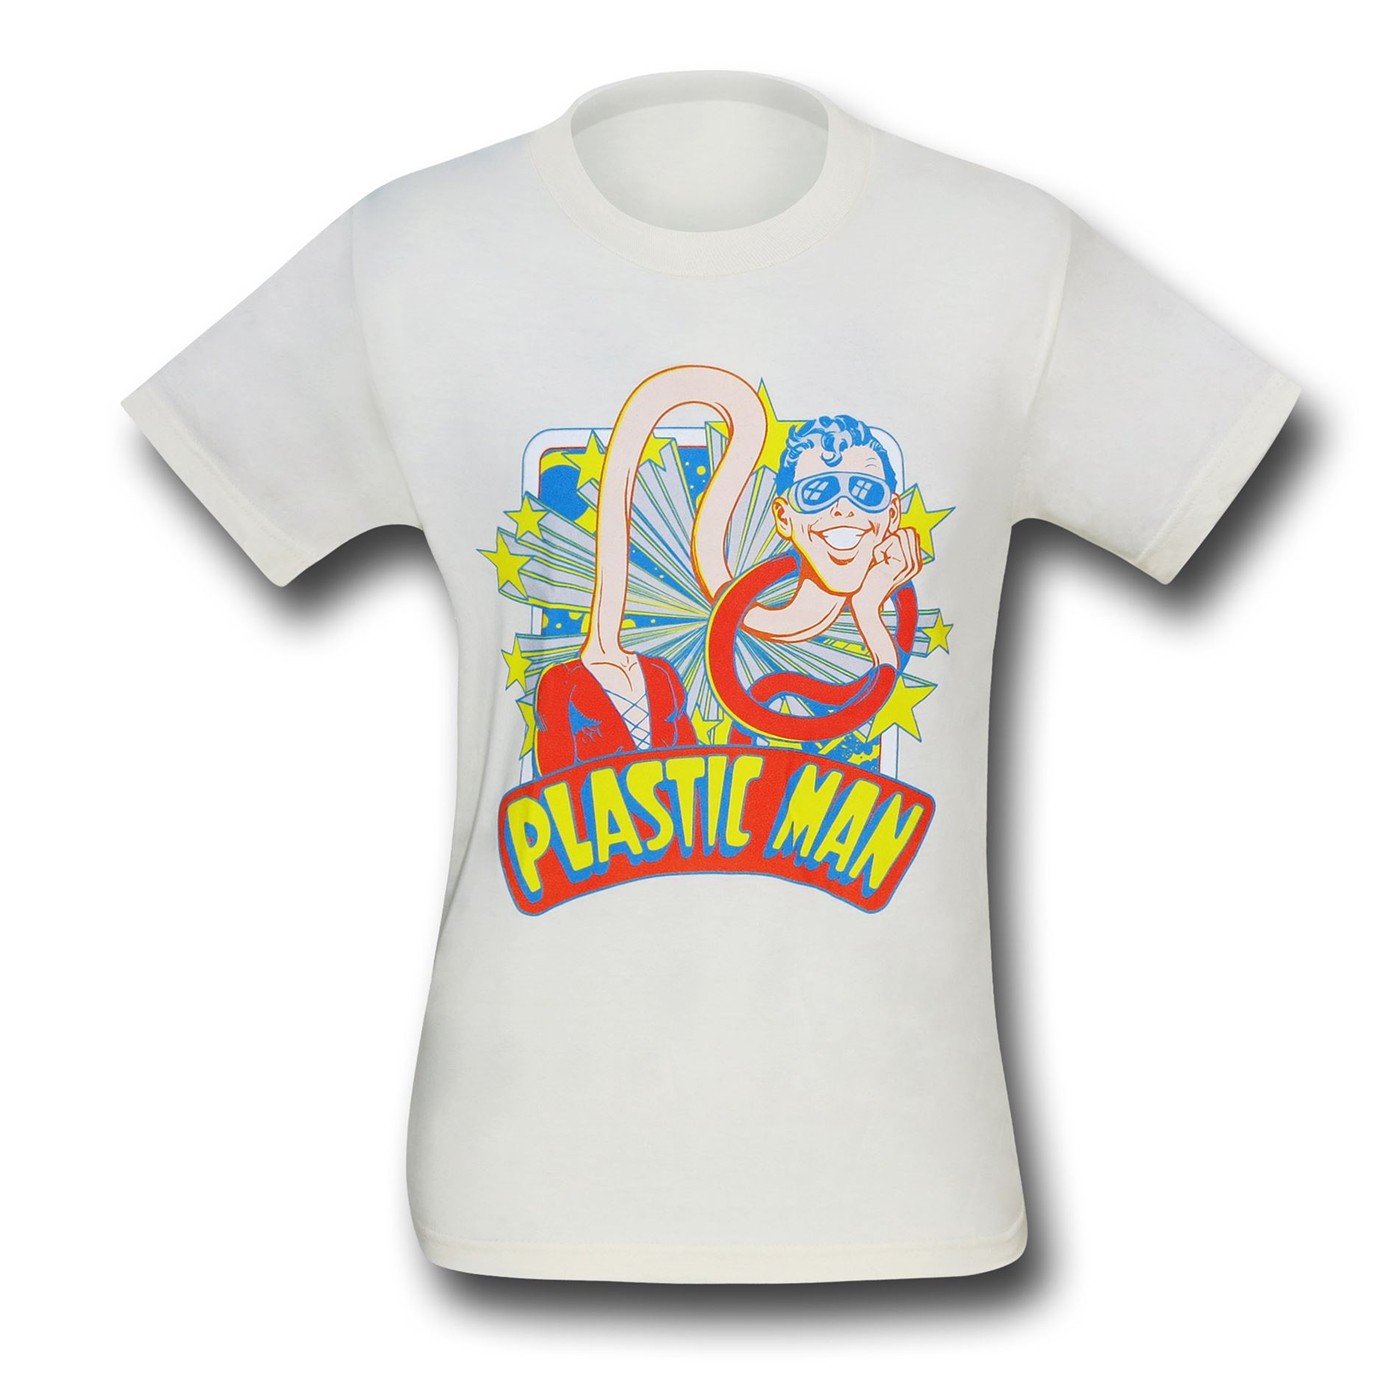 Plastic Man Stars T-Shirt